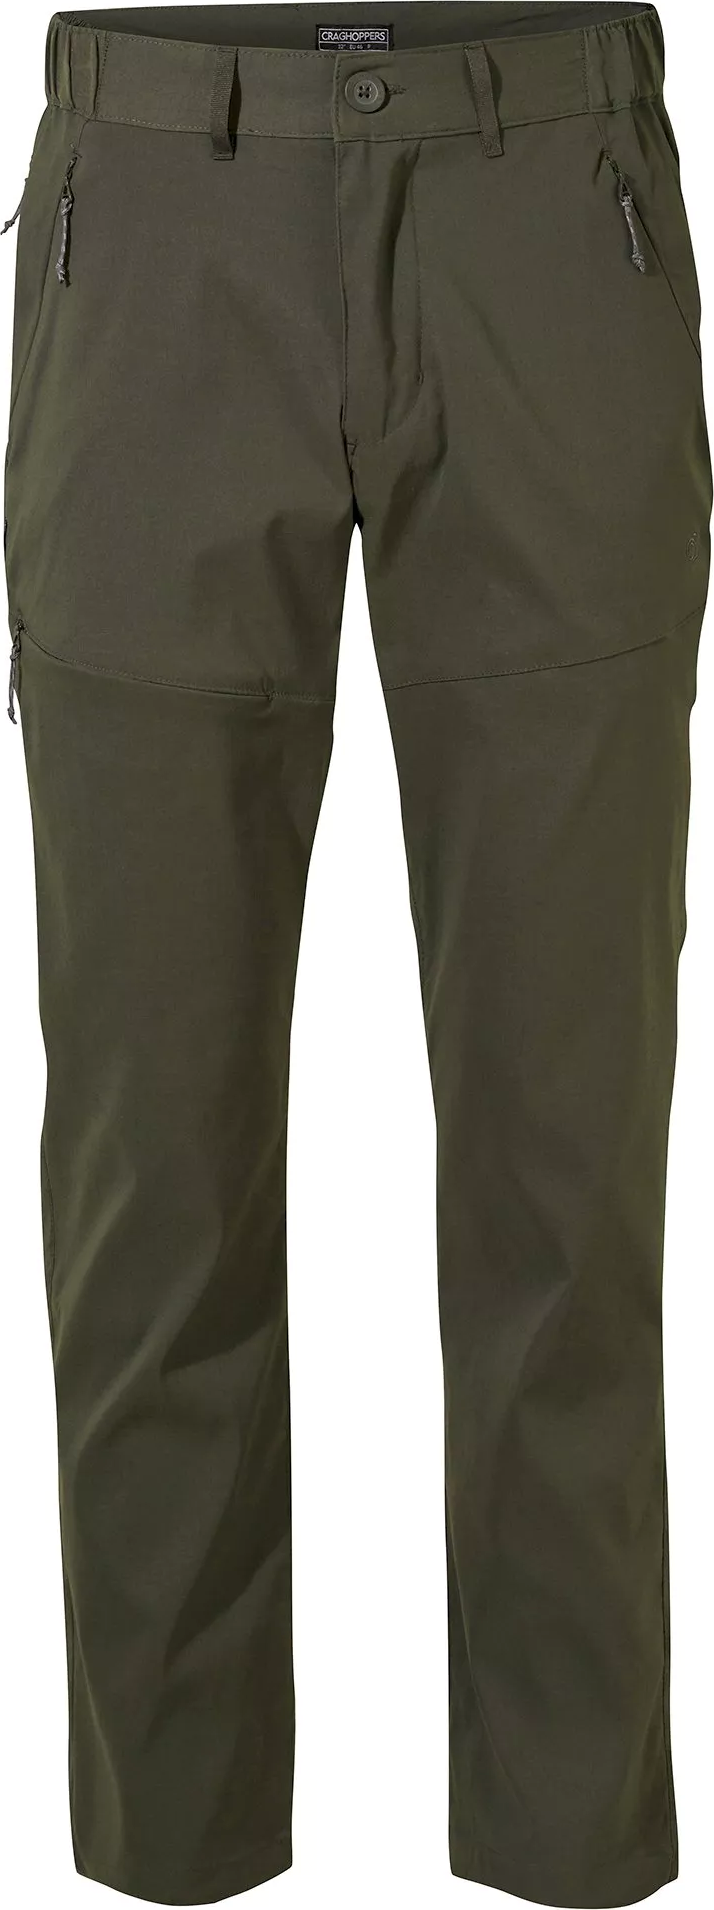 Craghoppers Men’s Kiwi Pro II Trousers Dark Khaki